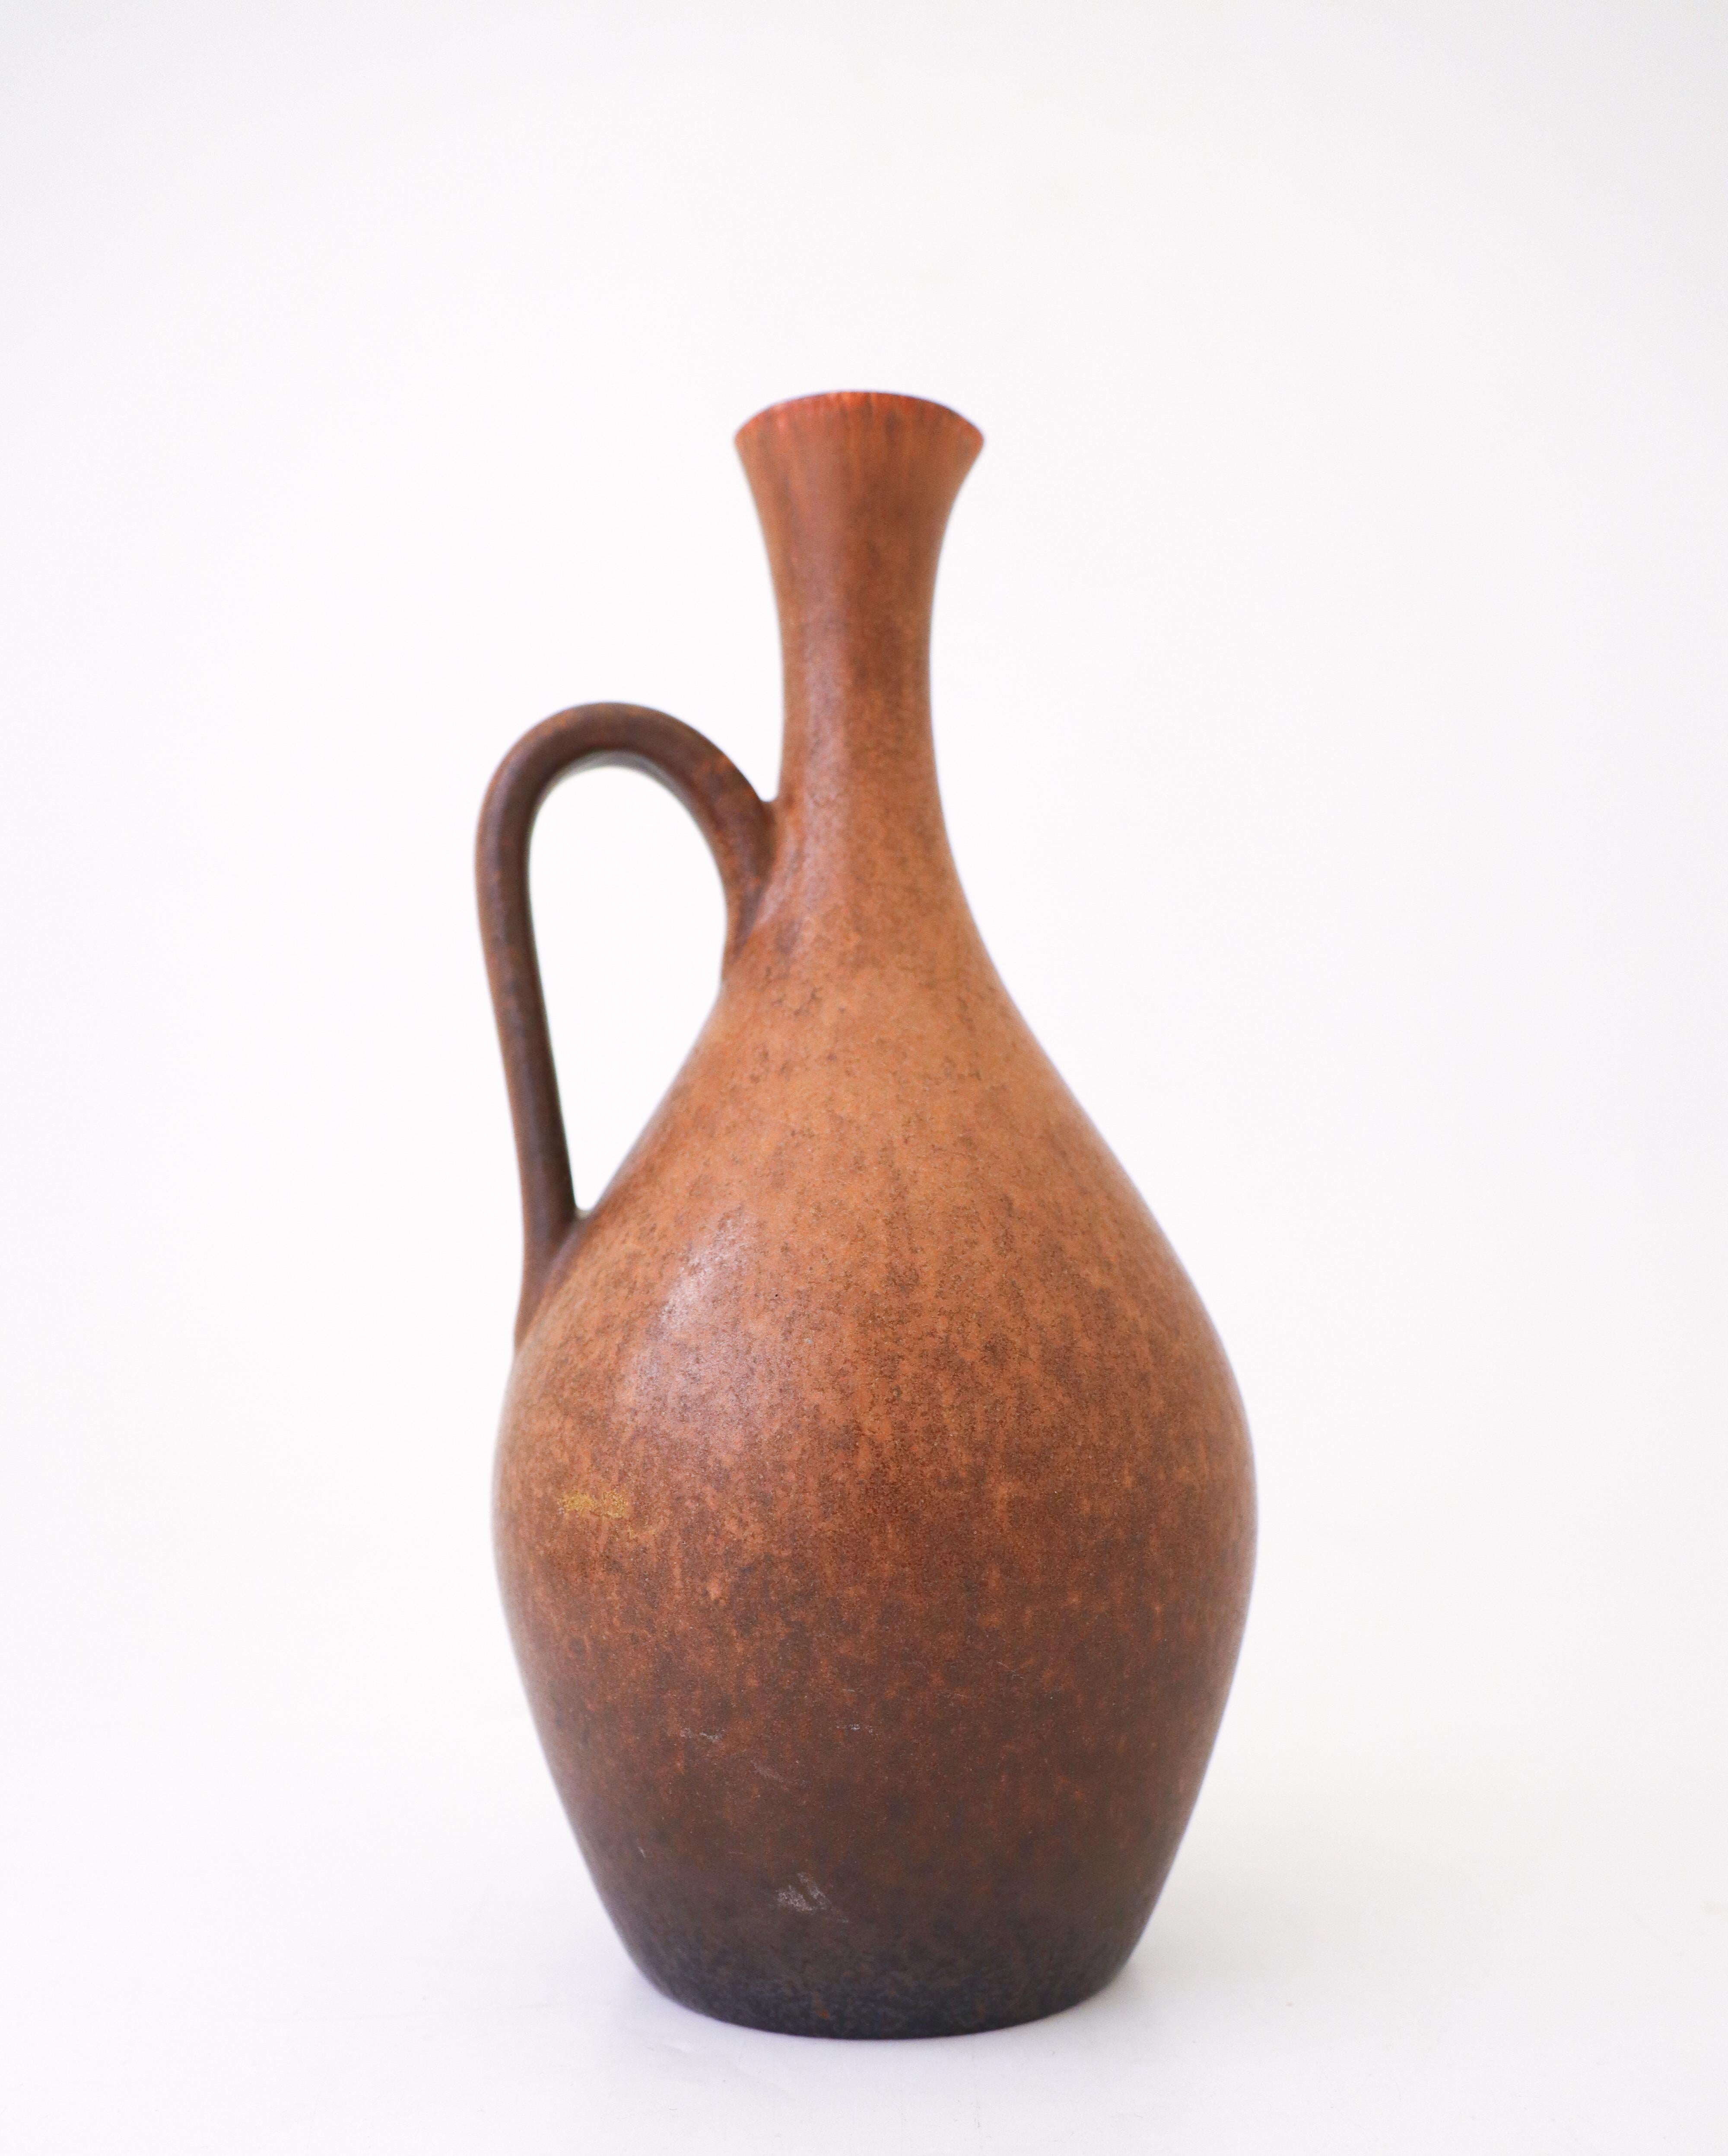 Vase en céramique à glaçure brune conçu par Carl-Harry Stålhane chez Rörstrand. Le vase, d'une hauteur de 24 cm et d'un diamètre de 10 cm, est en très bon état. Il est marqué comme étant de 2ème qualité.

Carl-Harry Stålhane est l'un des grands